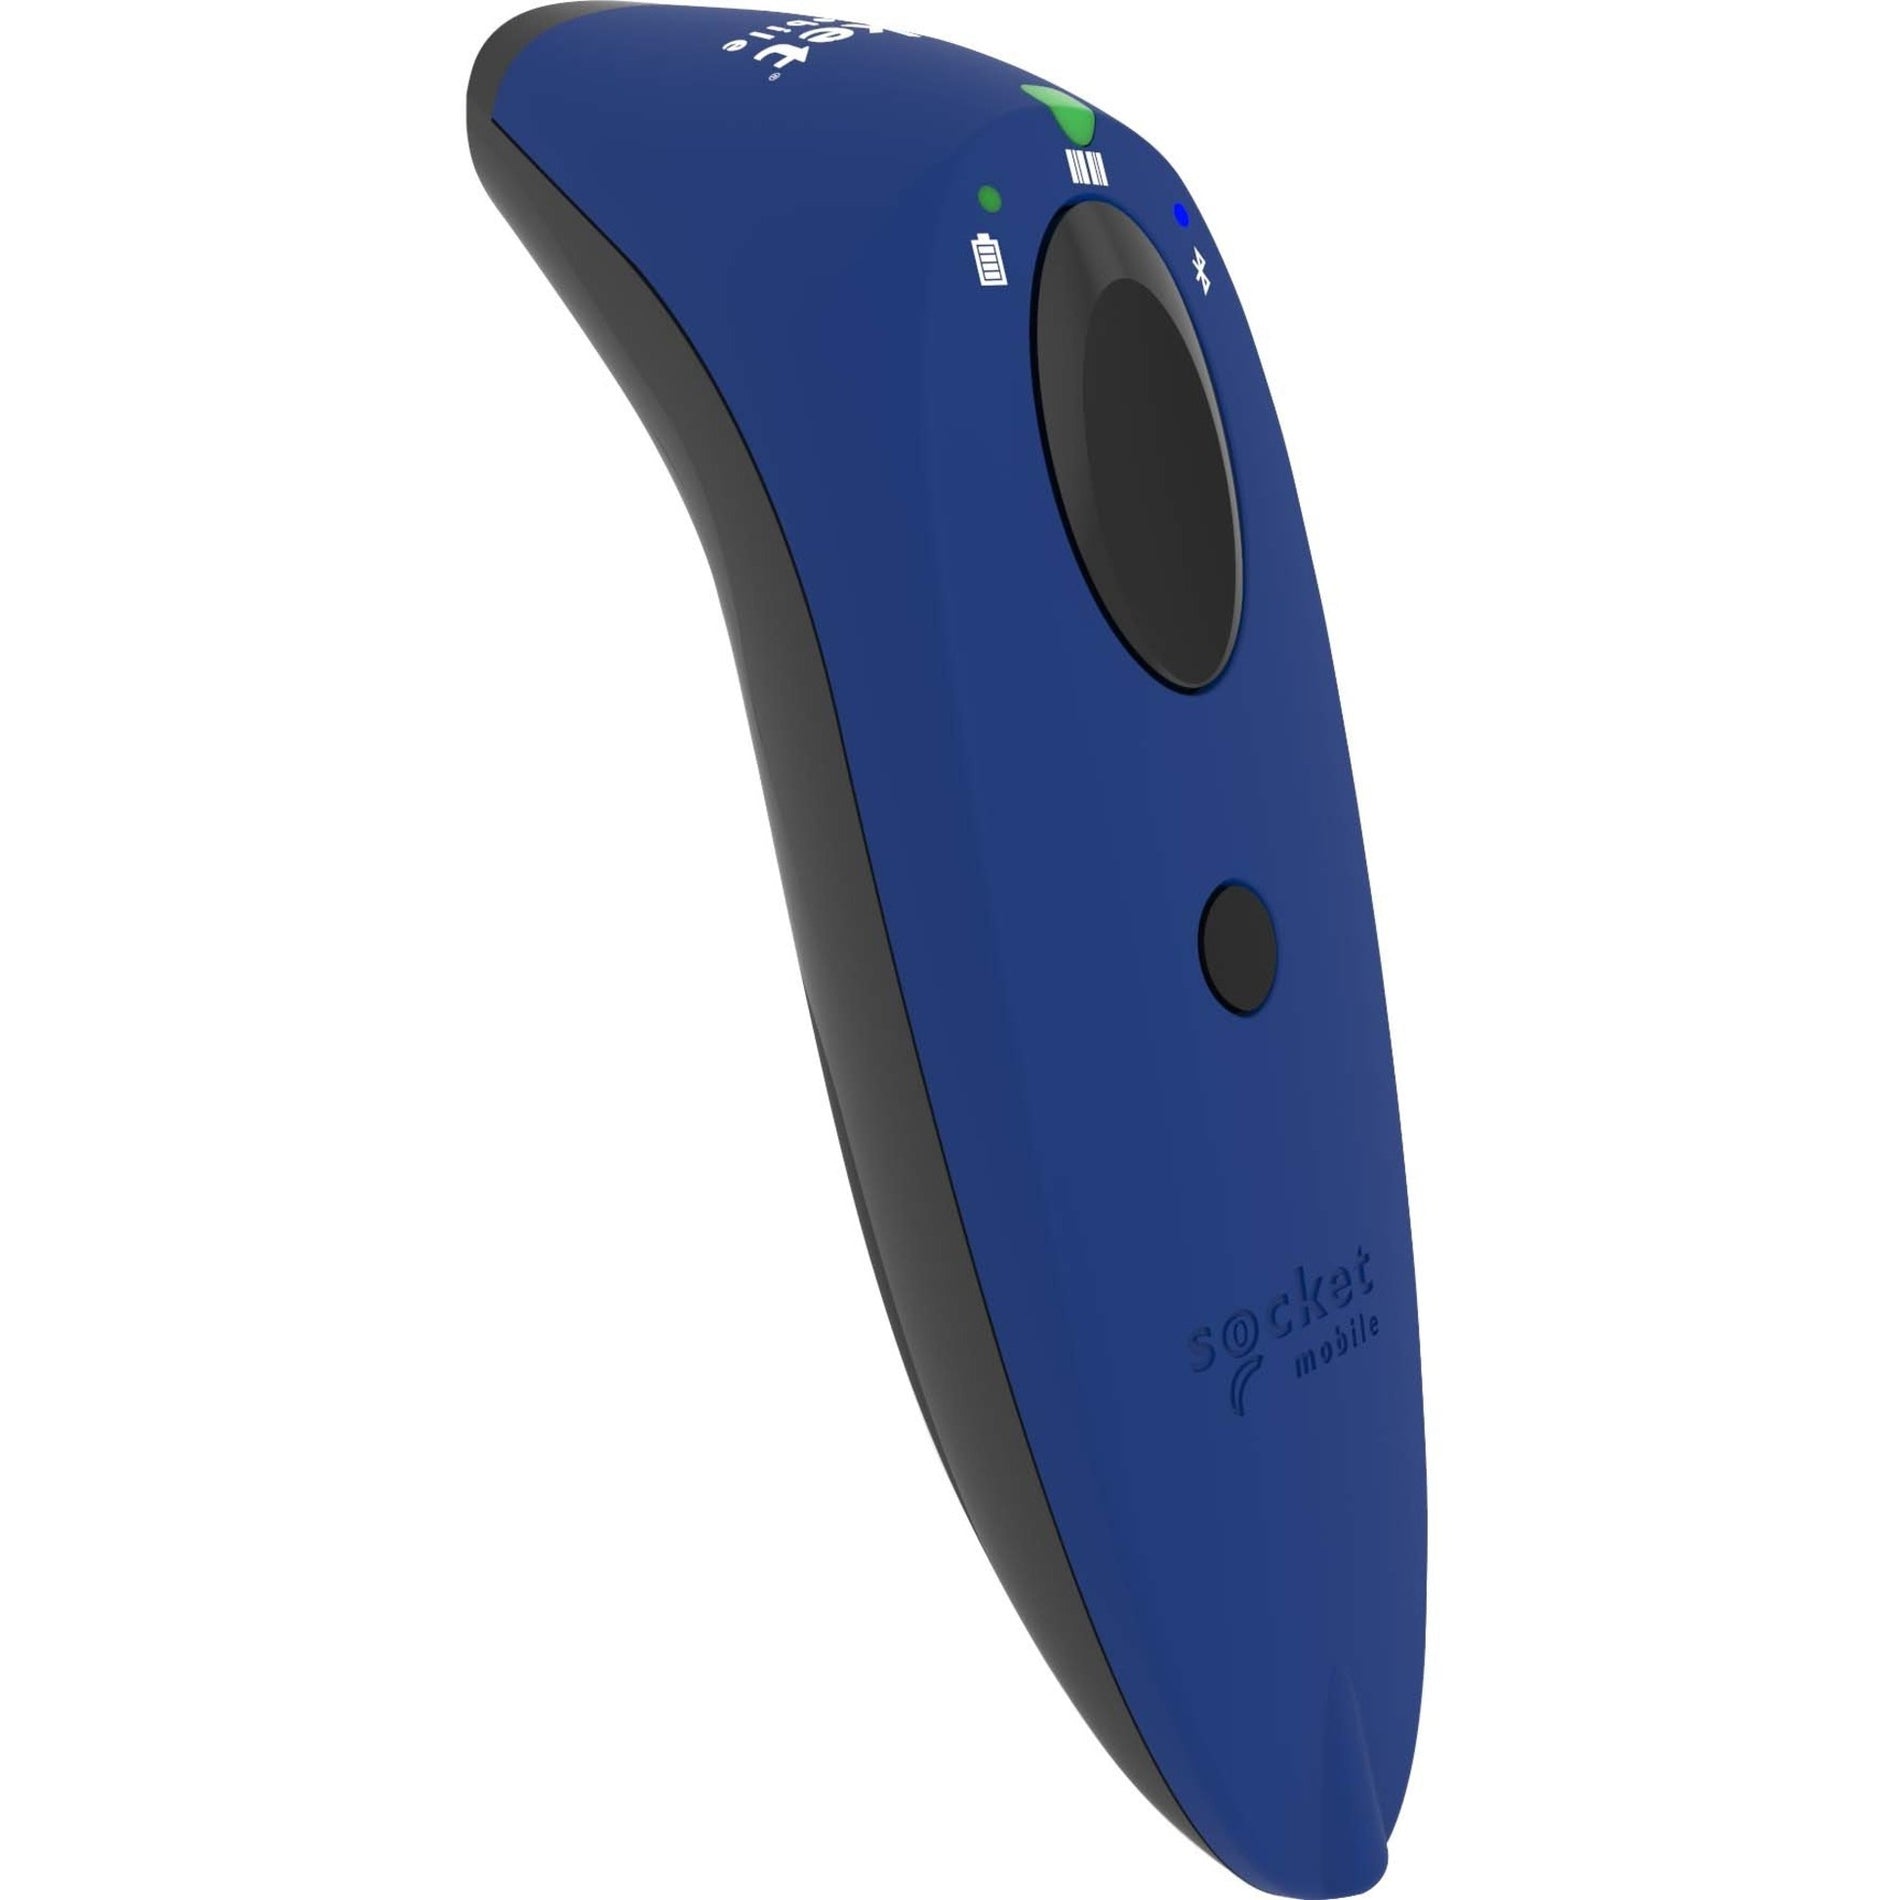 علامة تجارية: سوكيت موبايل المحمول CX3361-1683 SocketScan S730 ماسح ضوئي بالليزر للباركود ، أزرق - ماسح ضوئي لاسلكي 1D